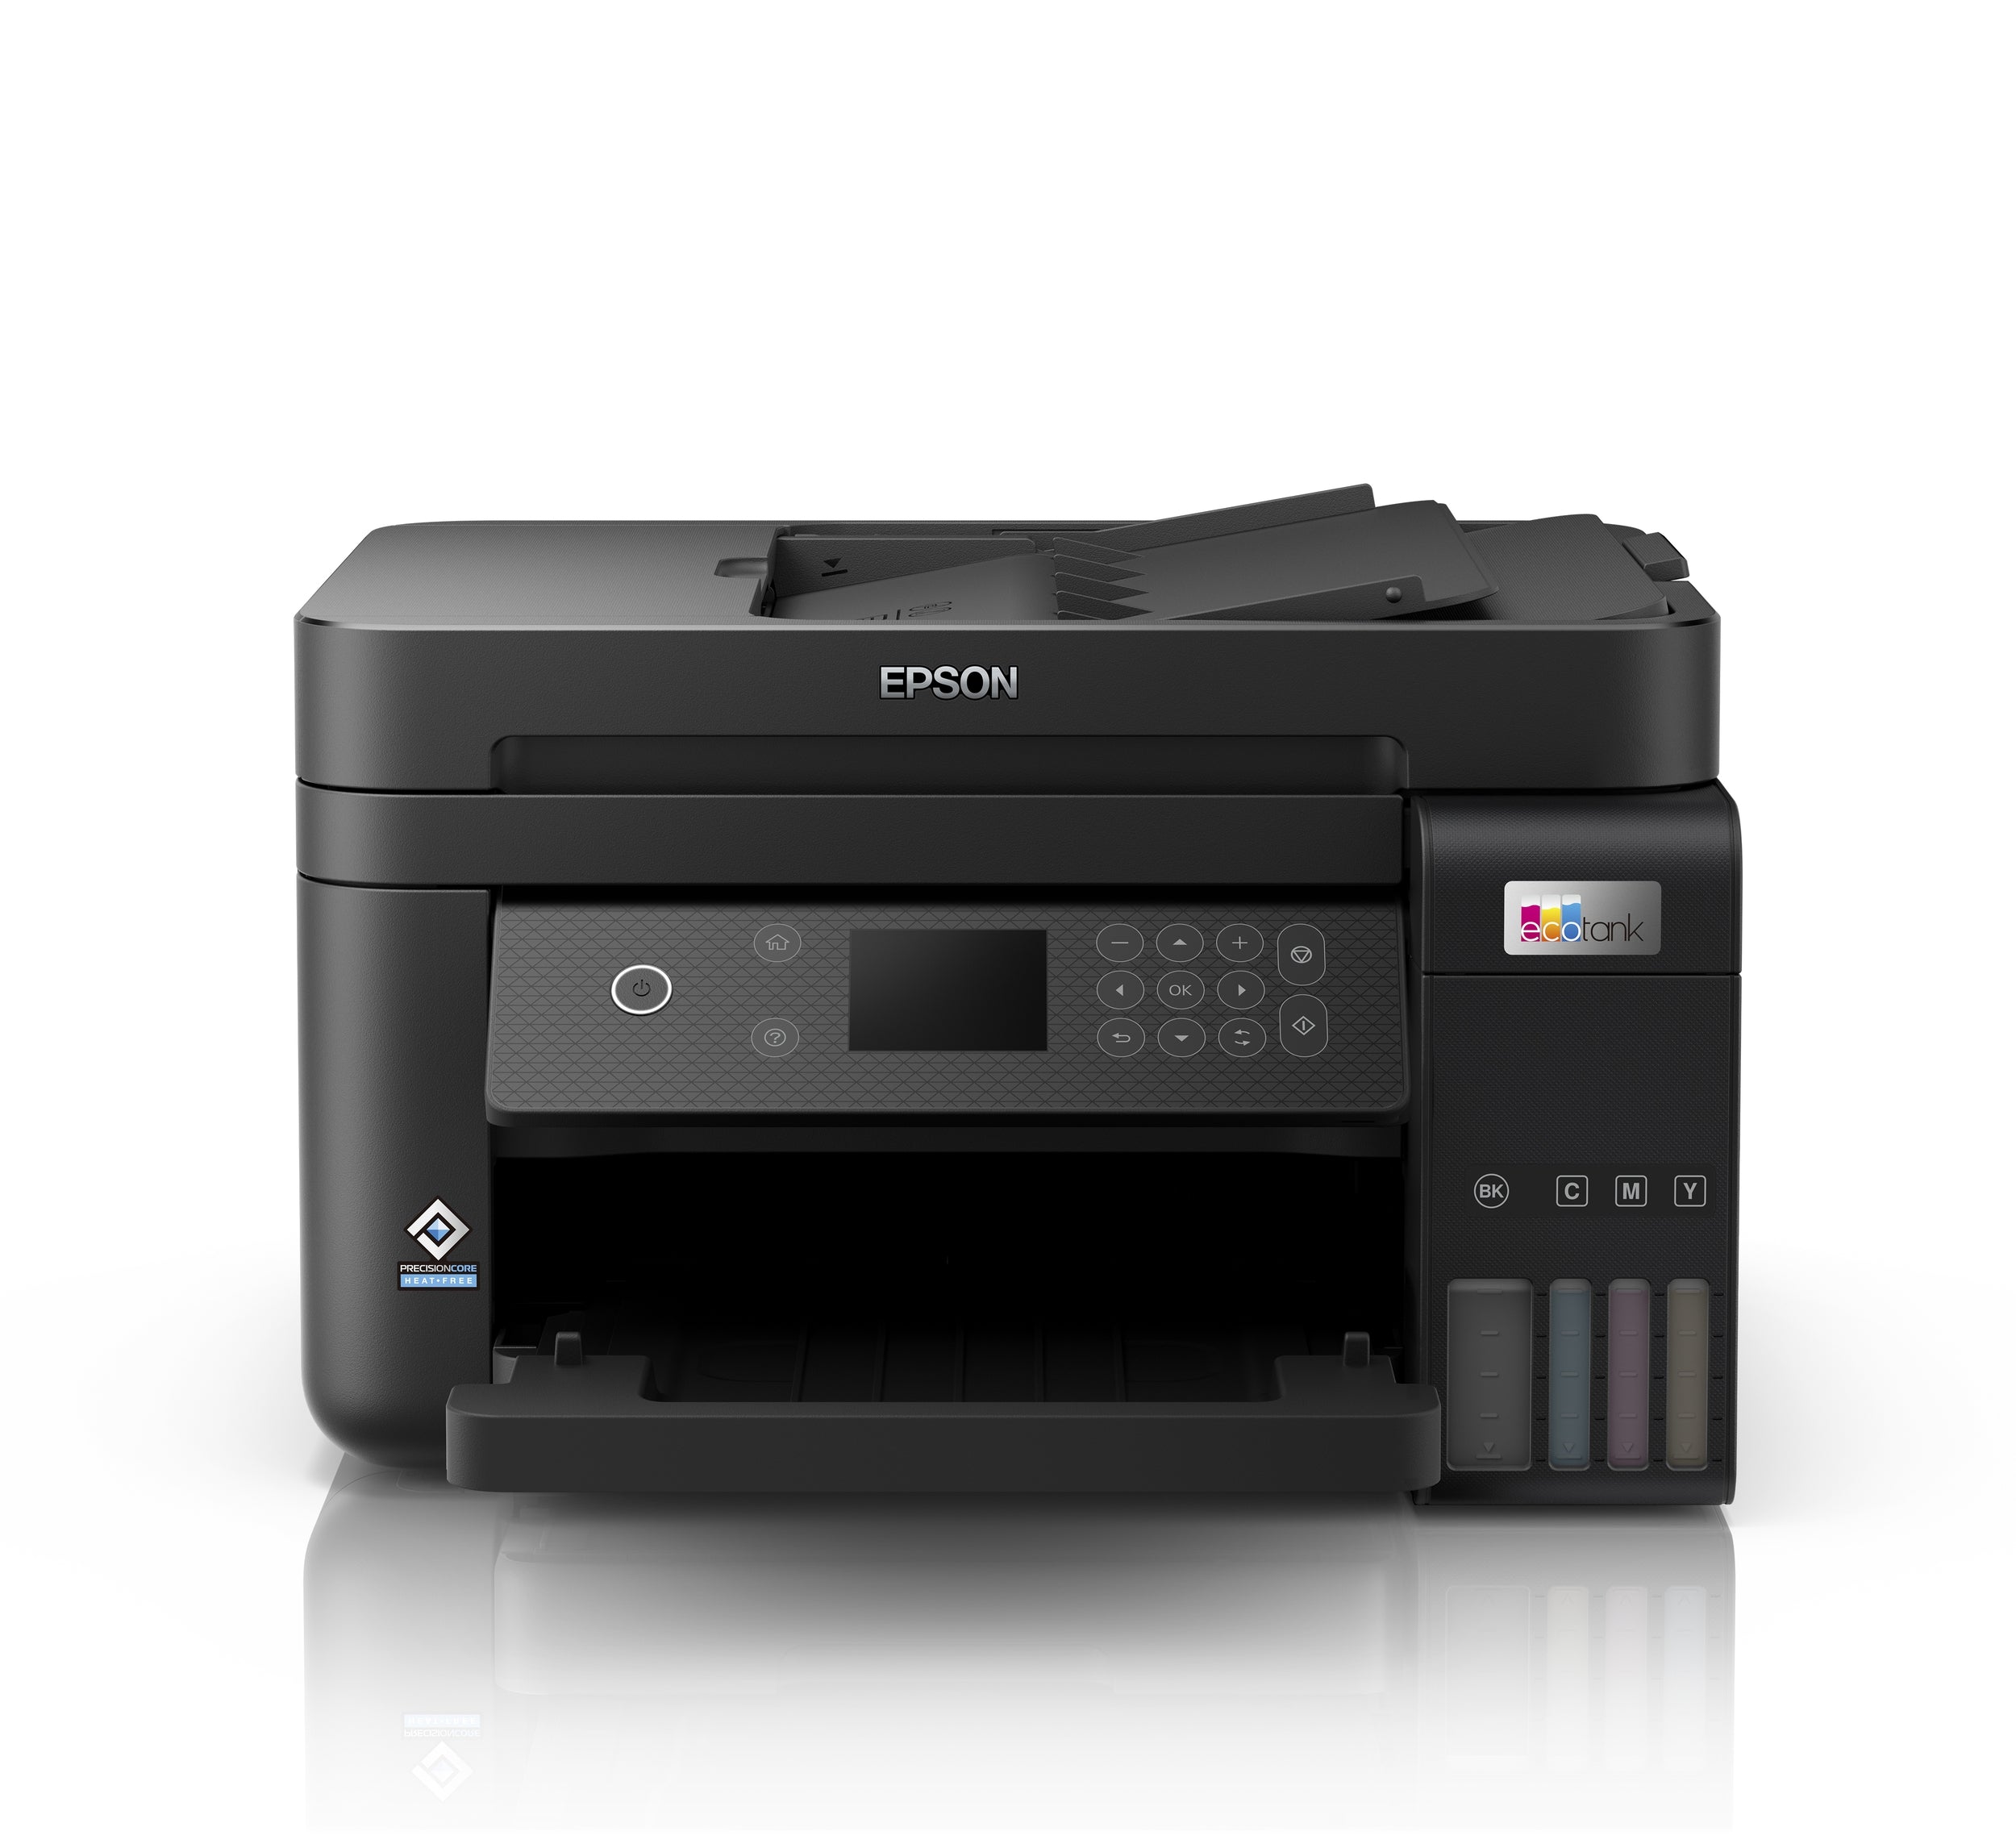 Impresora Multifuncional Epson C11Cj61301 4800 X 1200 Dpi Inyección De Tinta